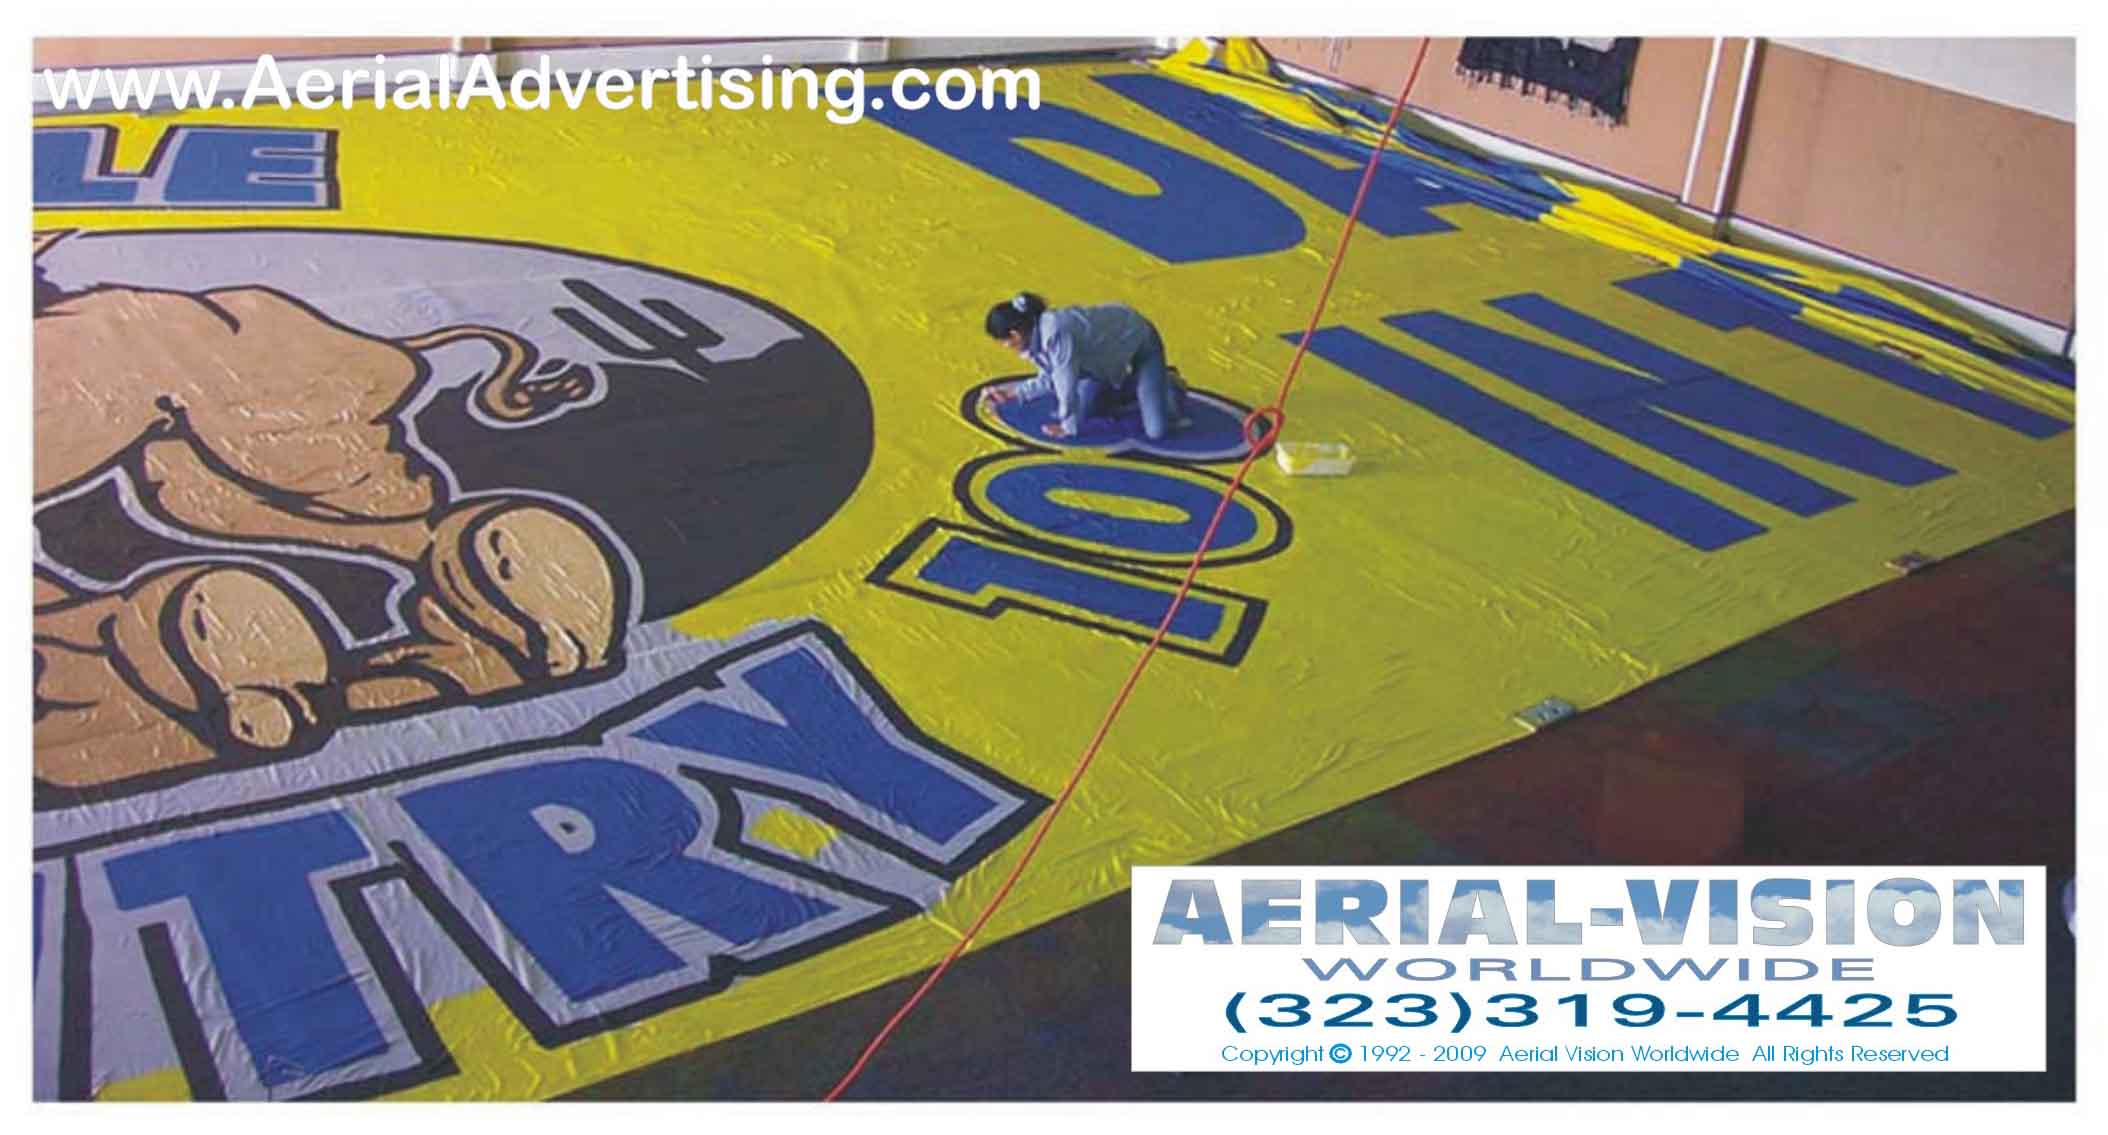 aerial_billboard_shop.jpg